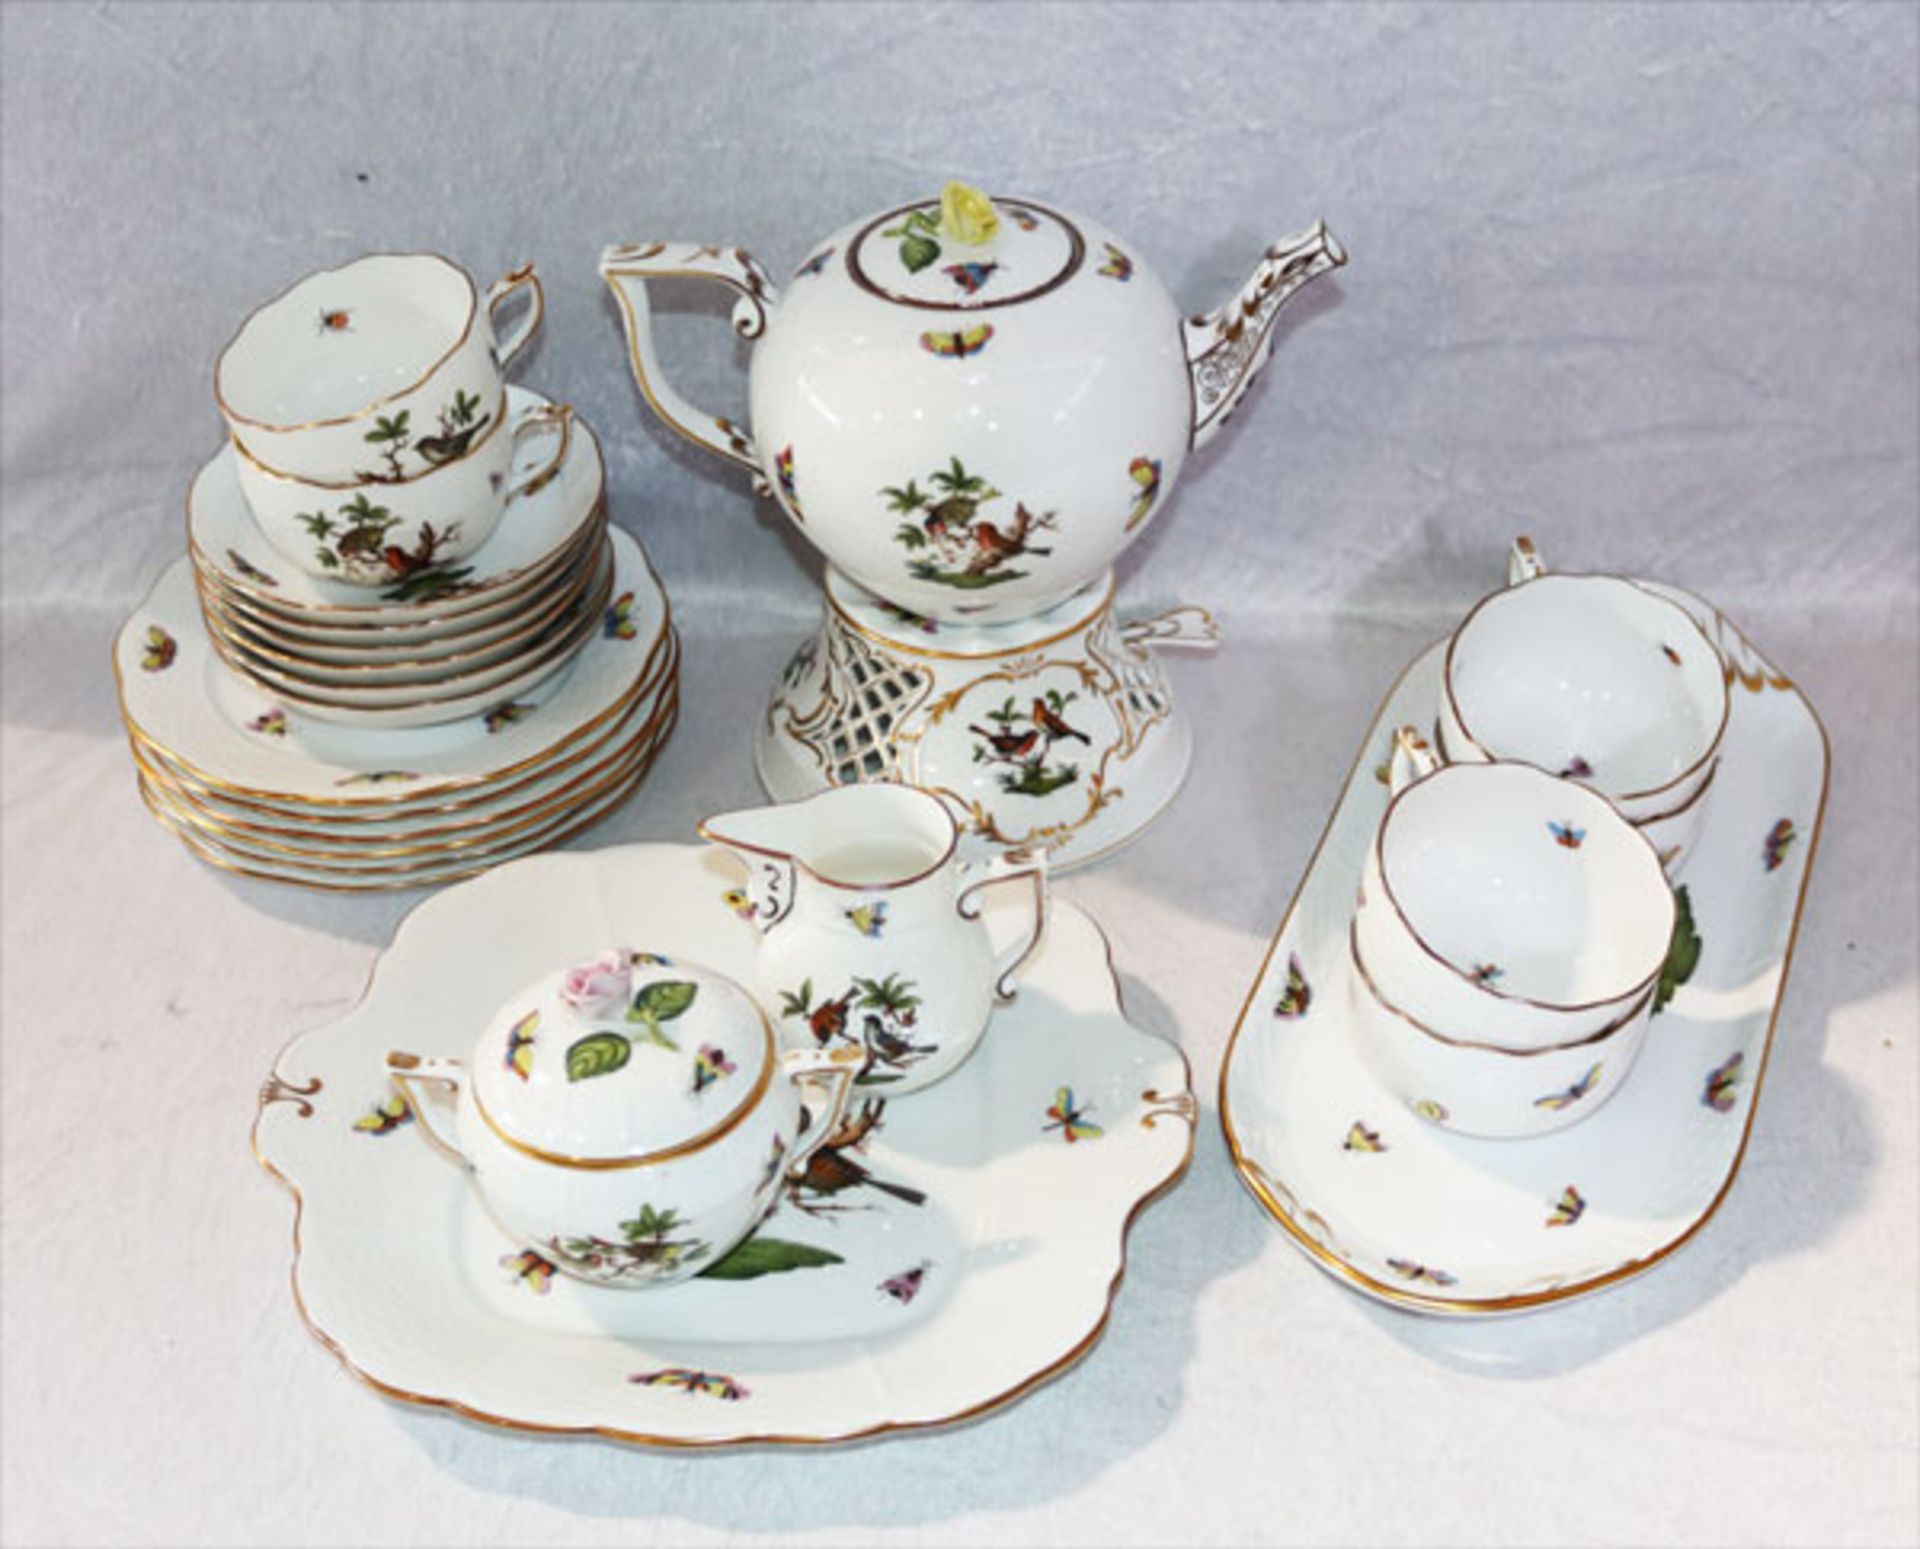 Herend Porzellan Tee-Service, Dekor Rothschild, Teekanne, Rose bestossen, Milch und Zucker, 6